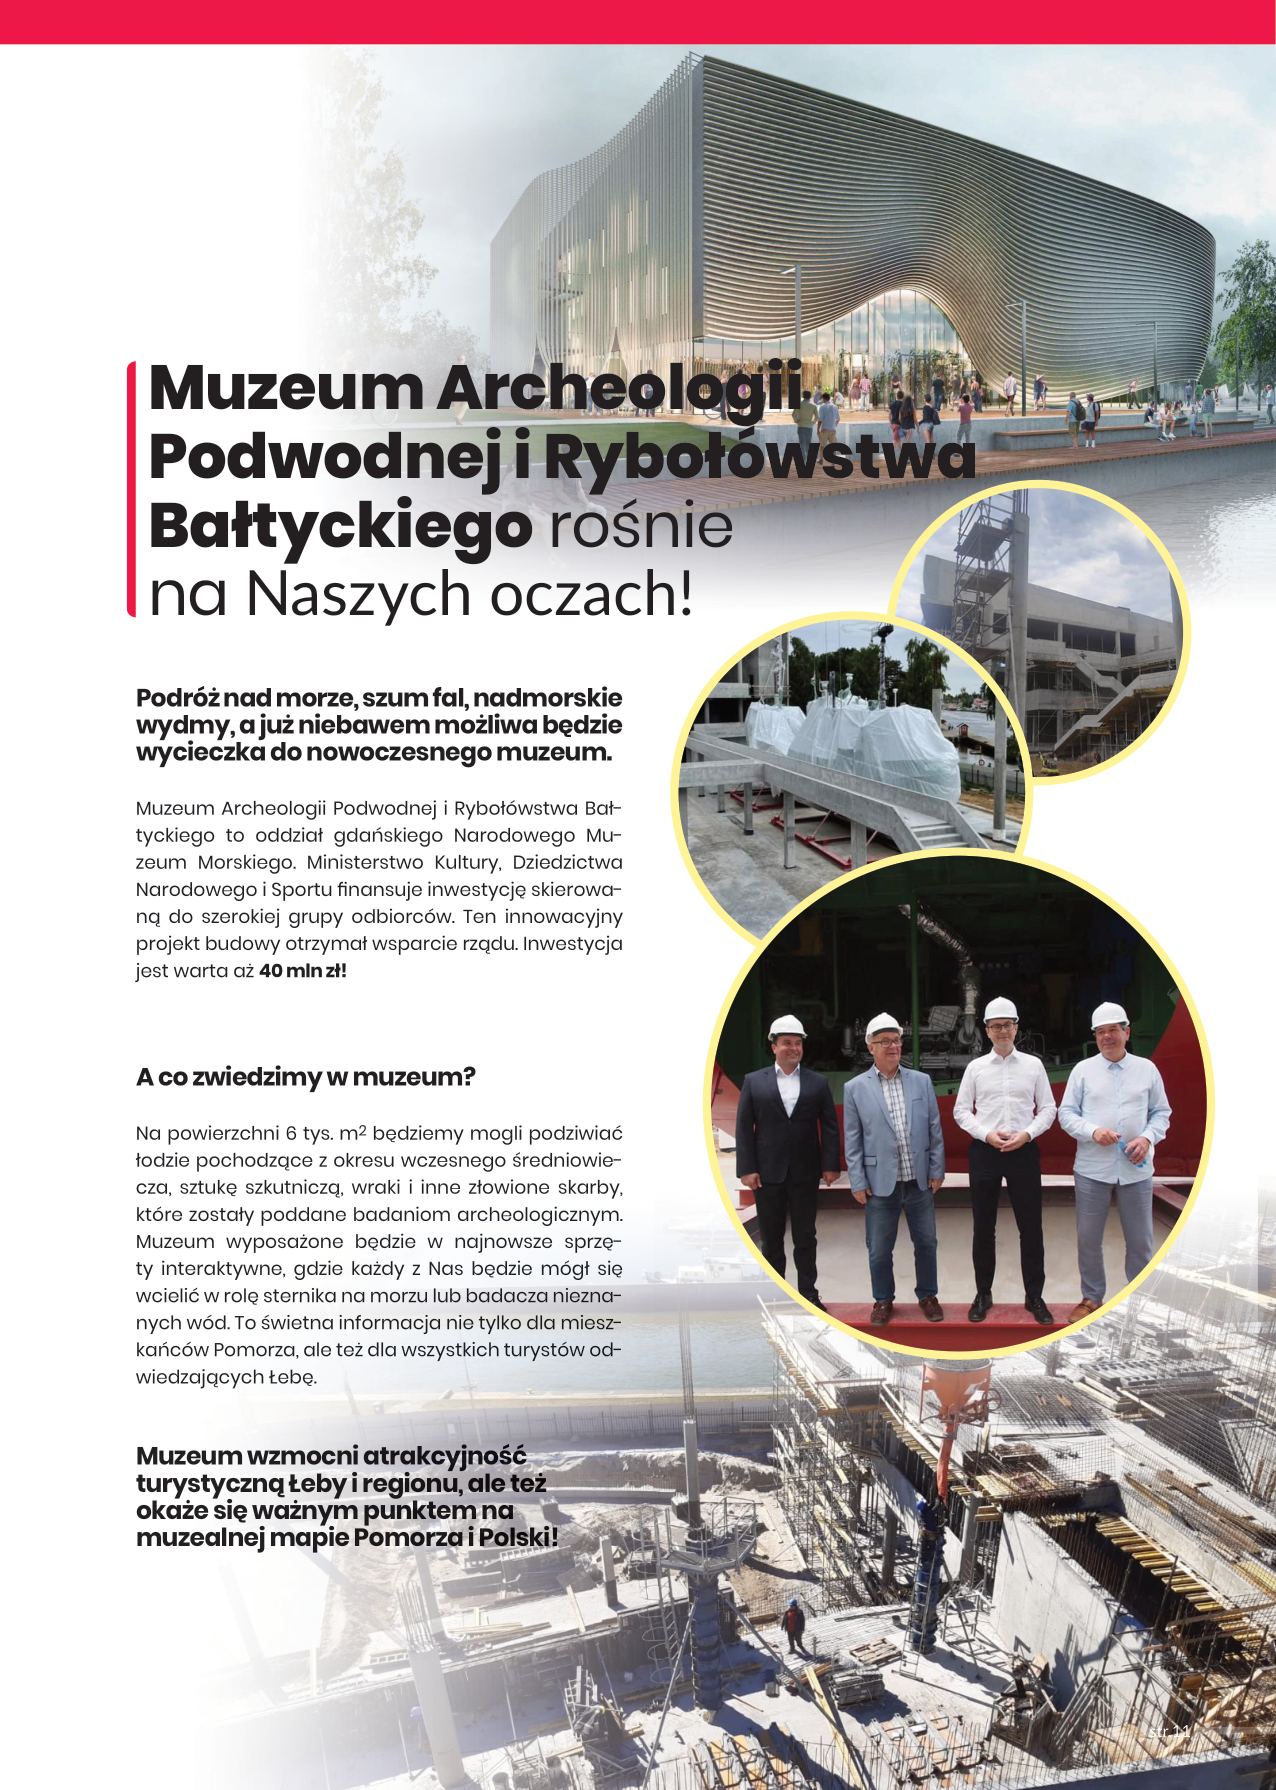 W ubiegłym roku zakończył się pierwszy etap budowy Muzeum Archeologii Podwodnej i Rybołówstwa w Łebie, a dziś trwają prace nad drugi etapem tego wielkiego przedsięwzięcia!